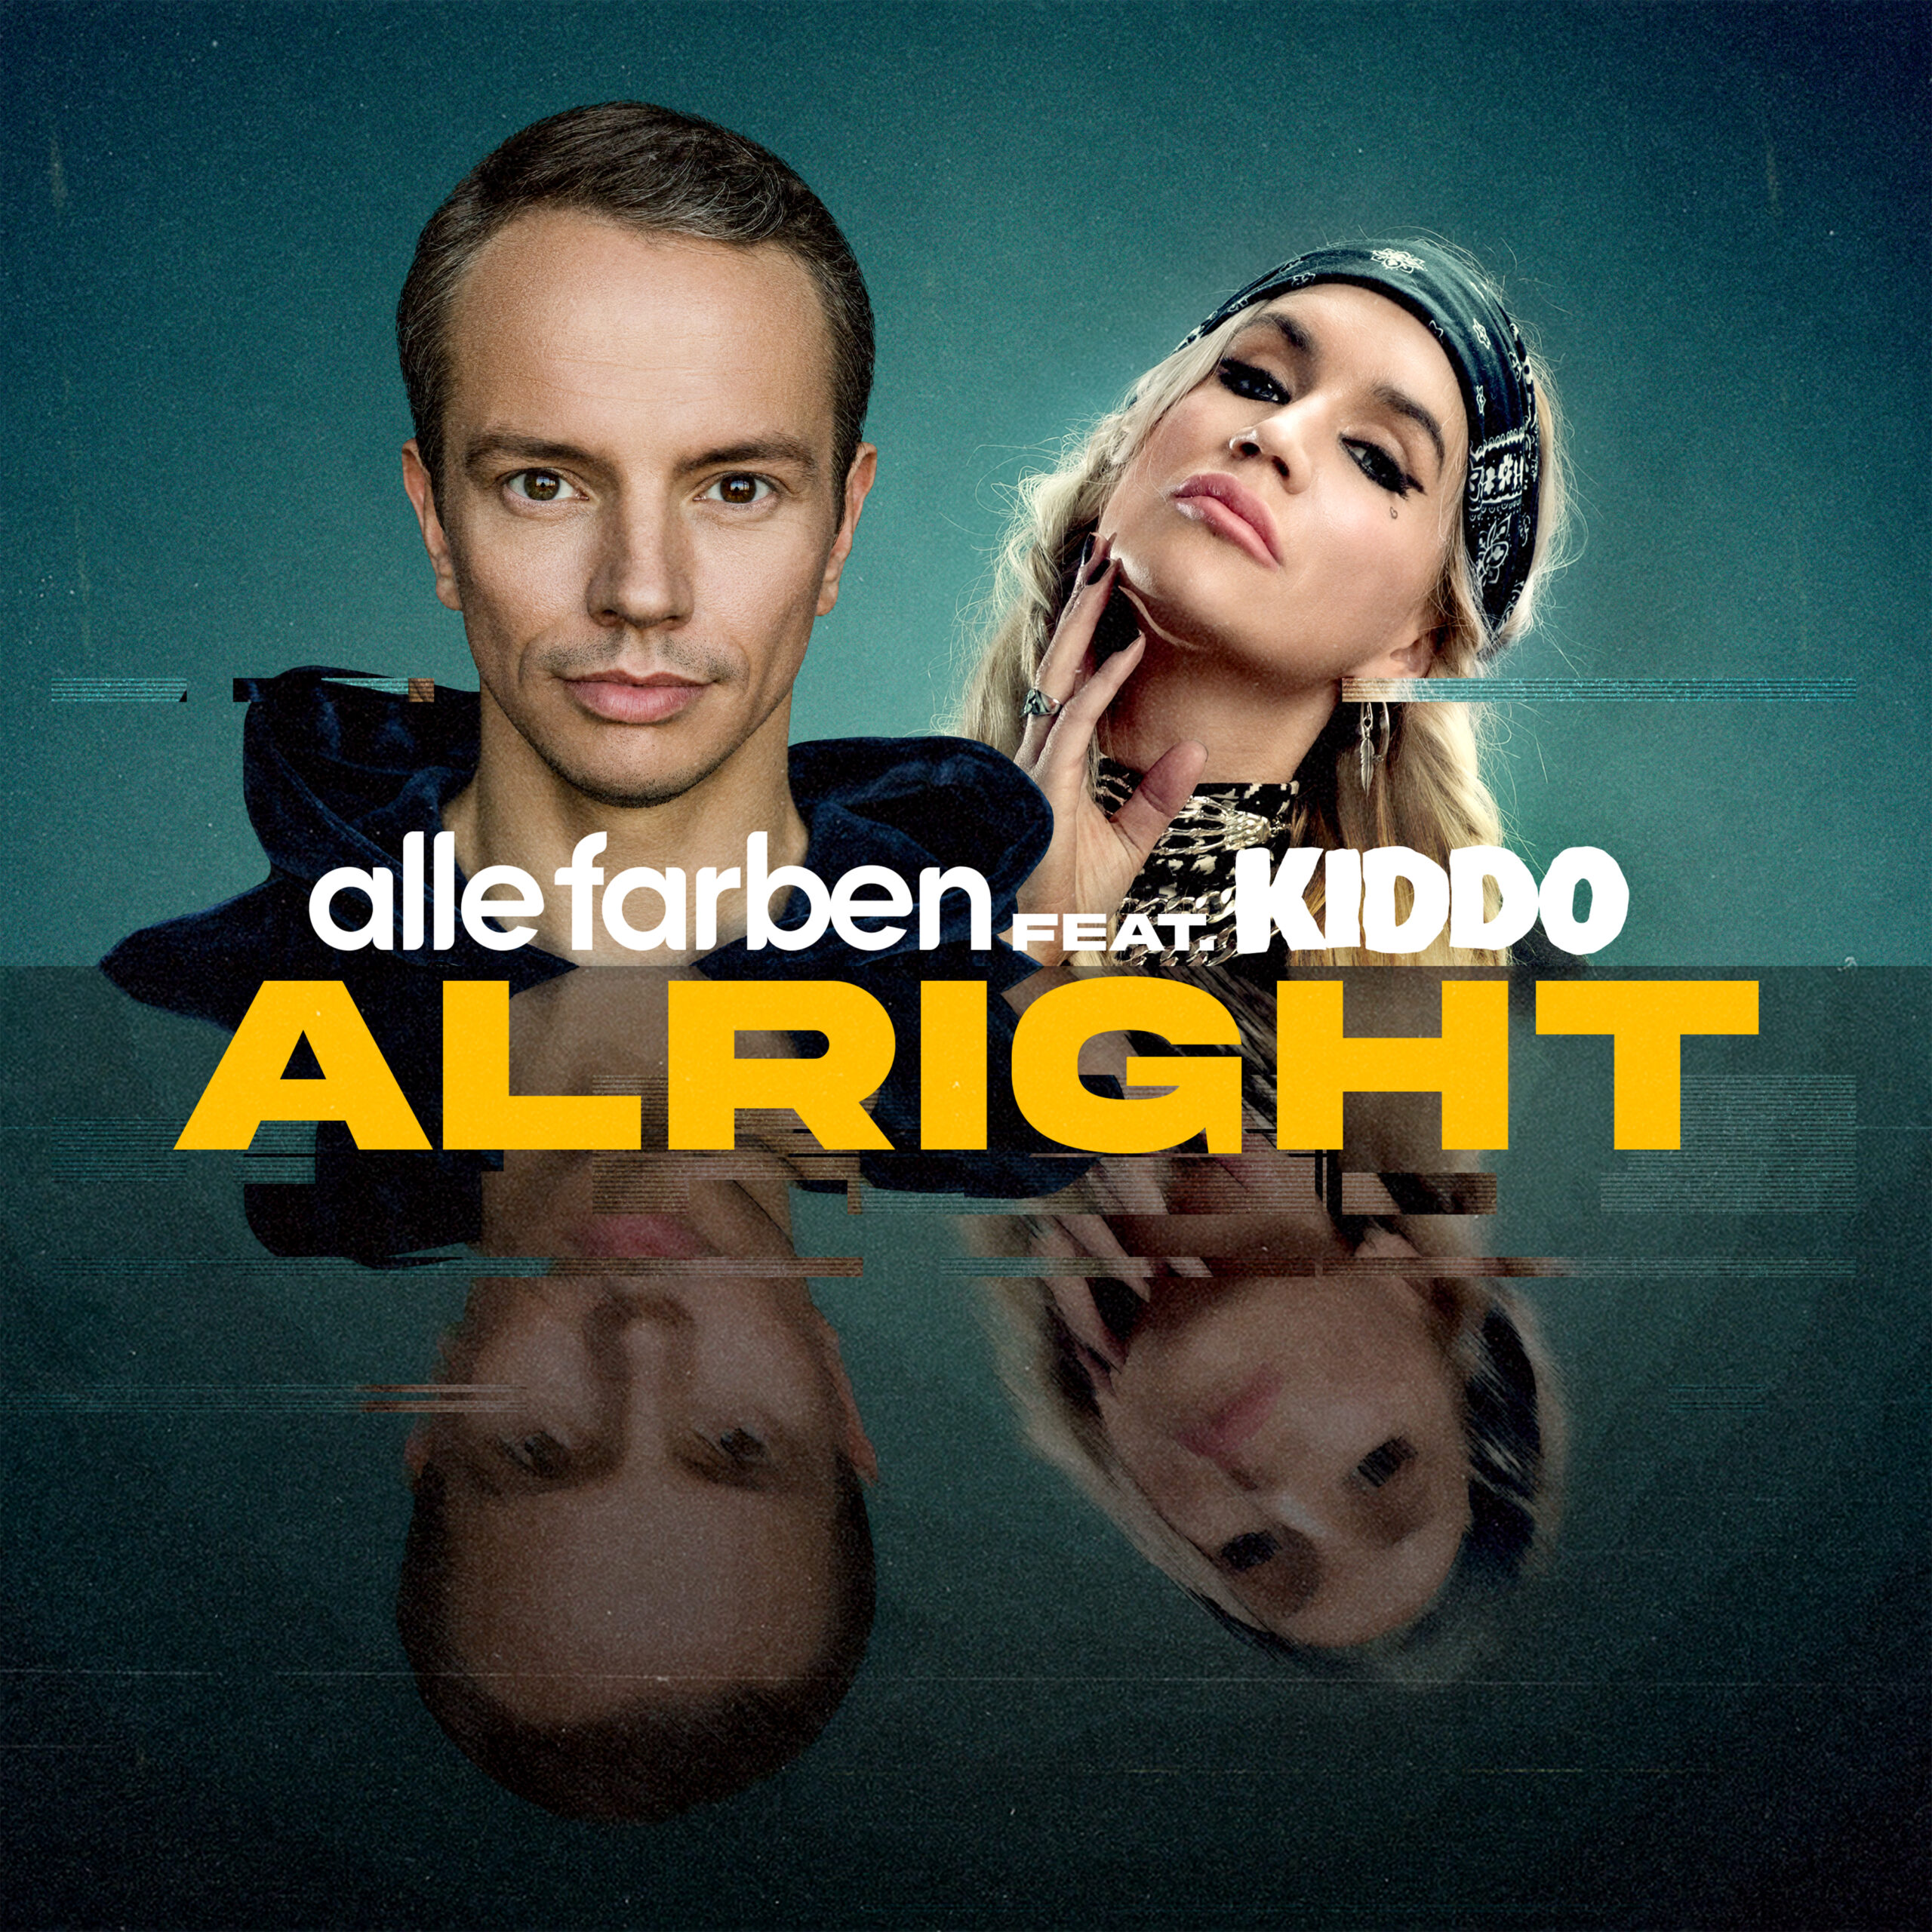 Alle Farben – Alright (feat. KIDDO) (Single) » TONSPION